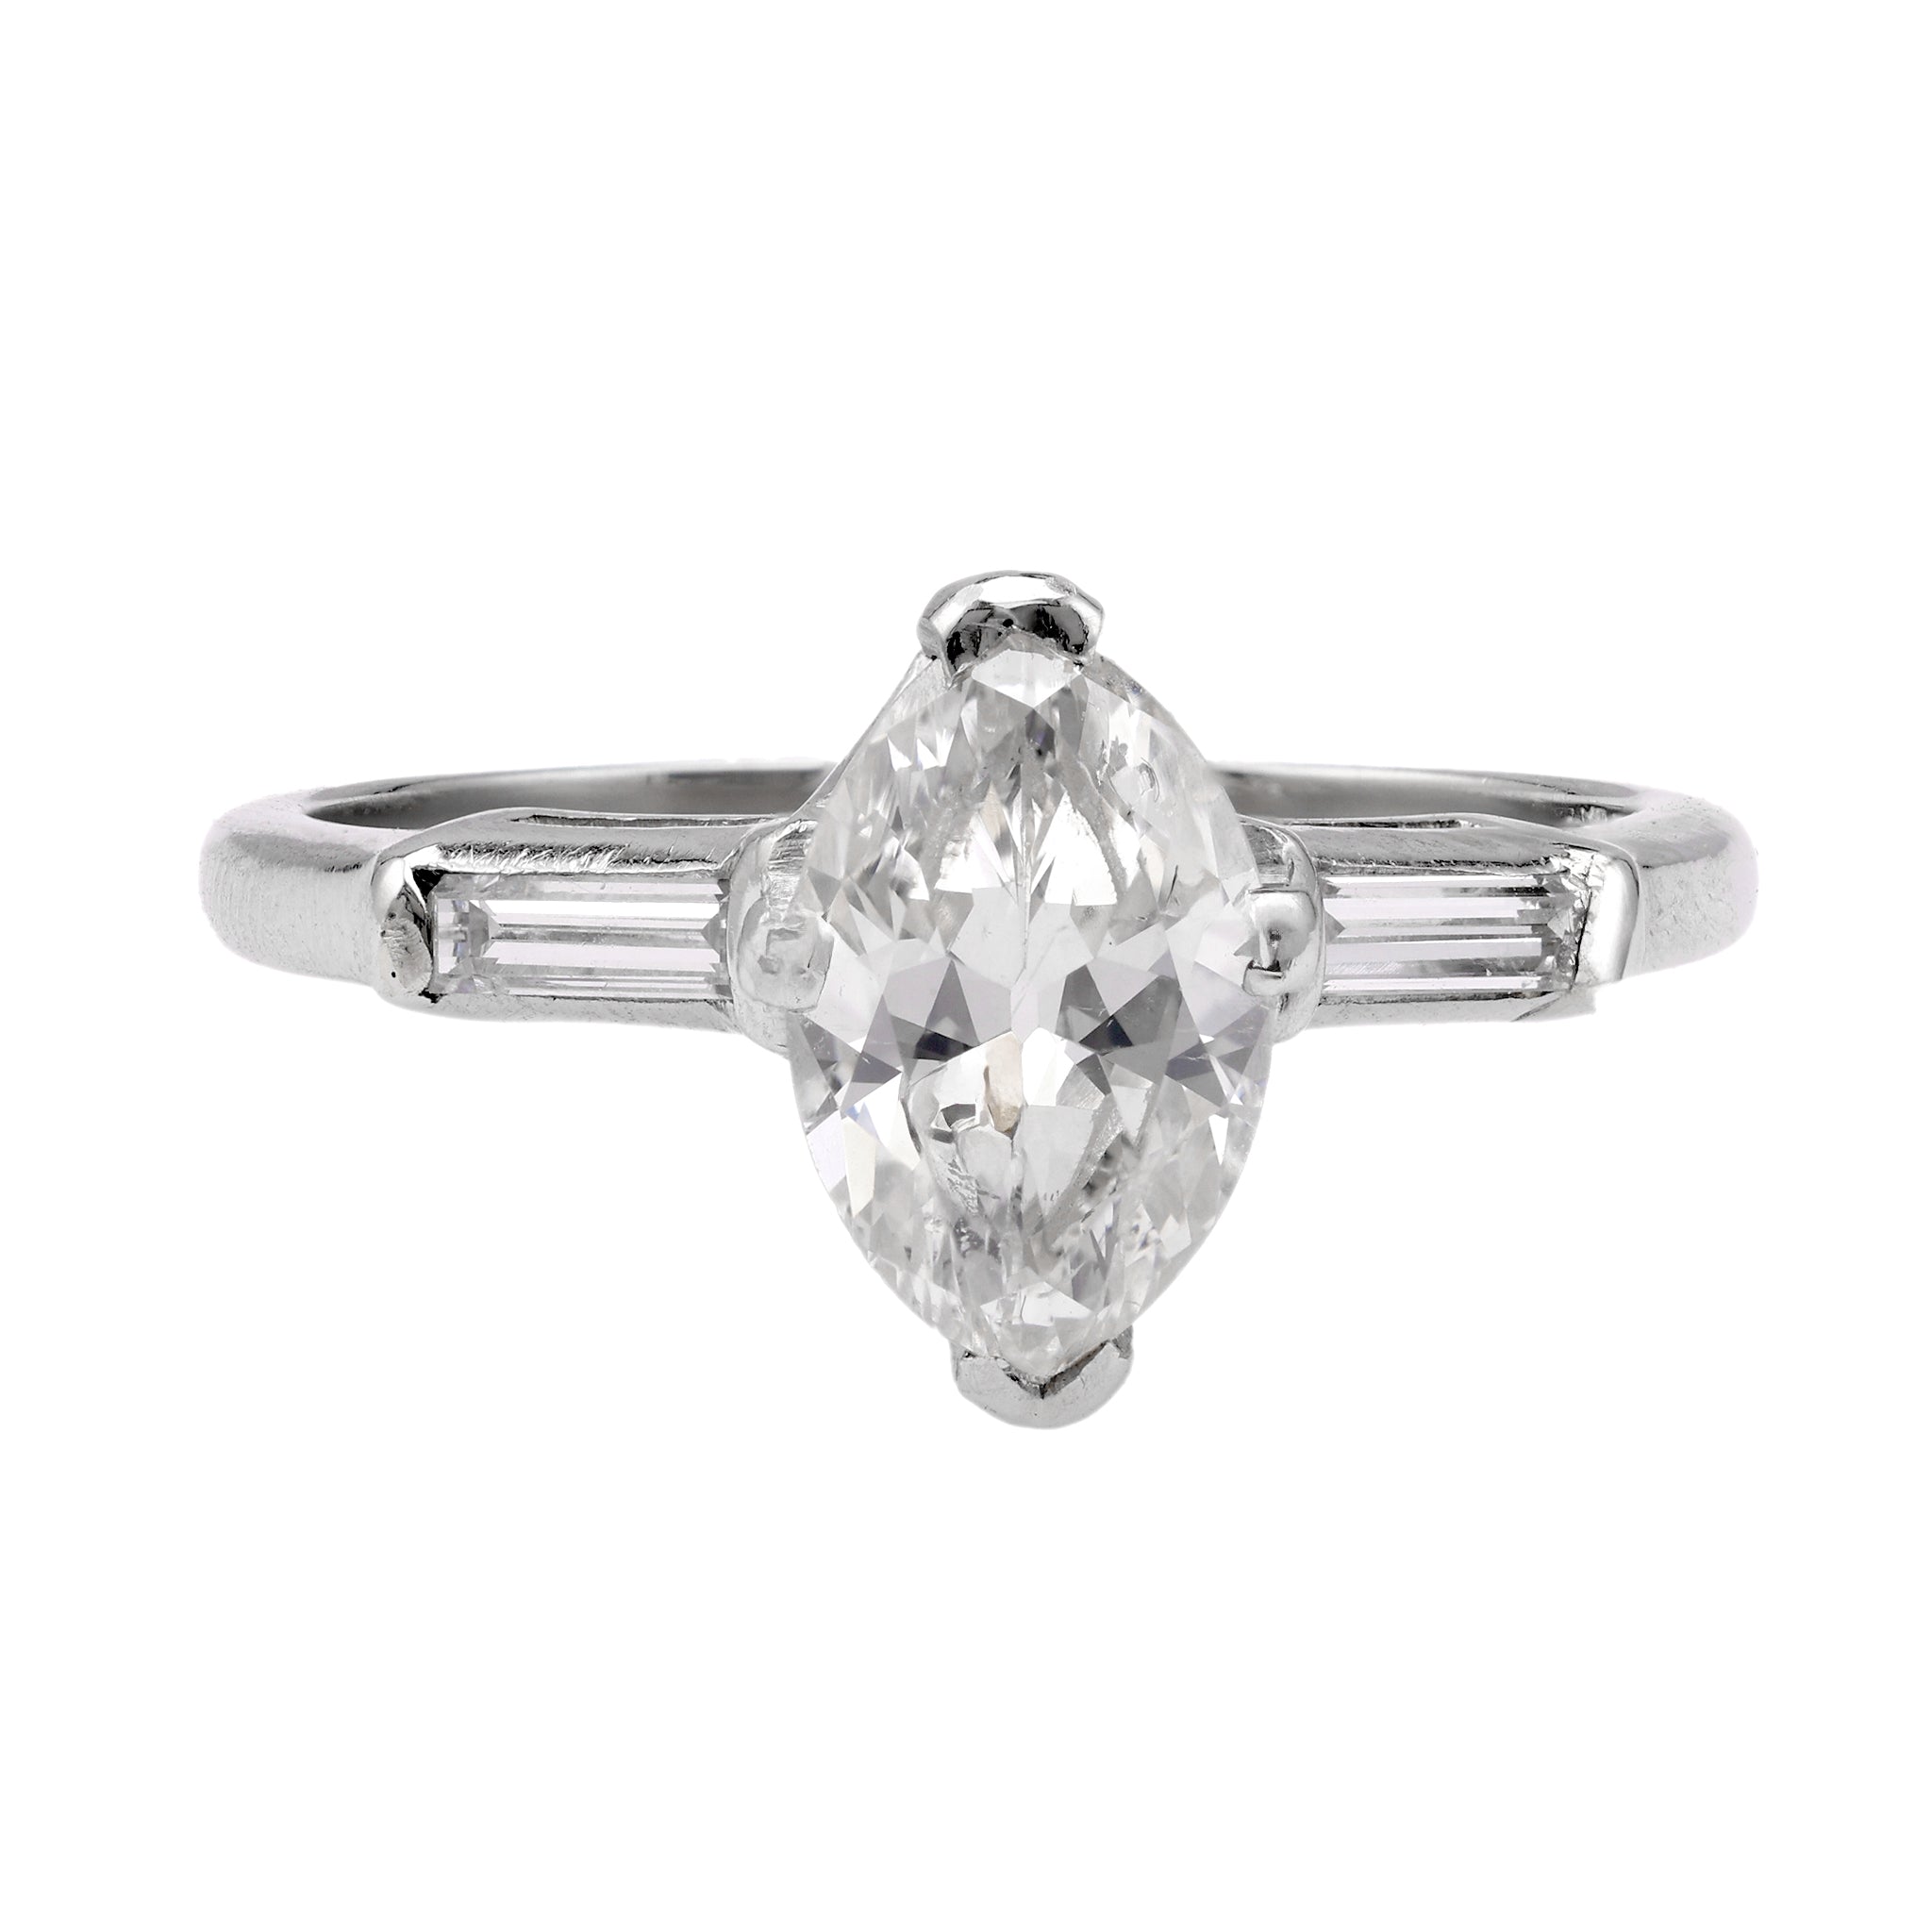 Art Deco GIA 1.04 Carat Marquise Cut Diamond Platinum Ring